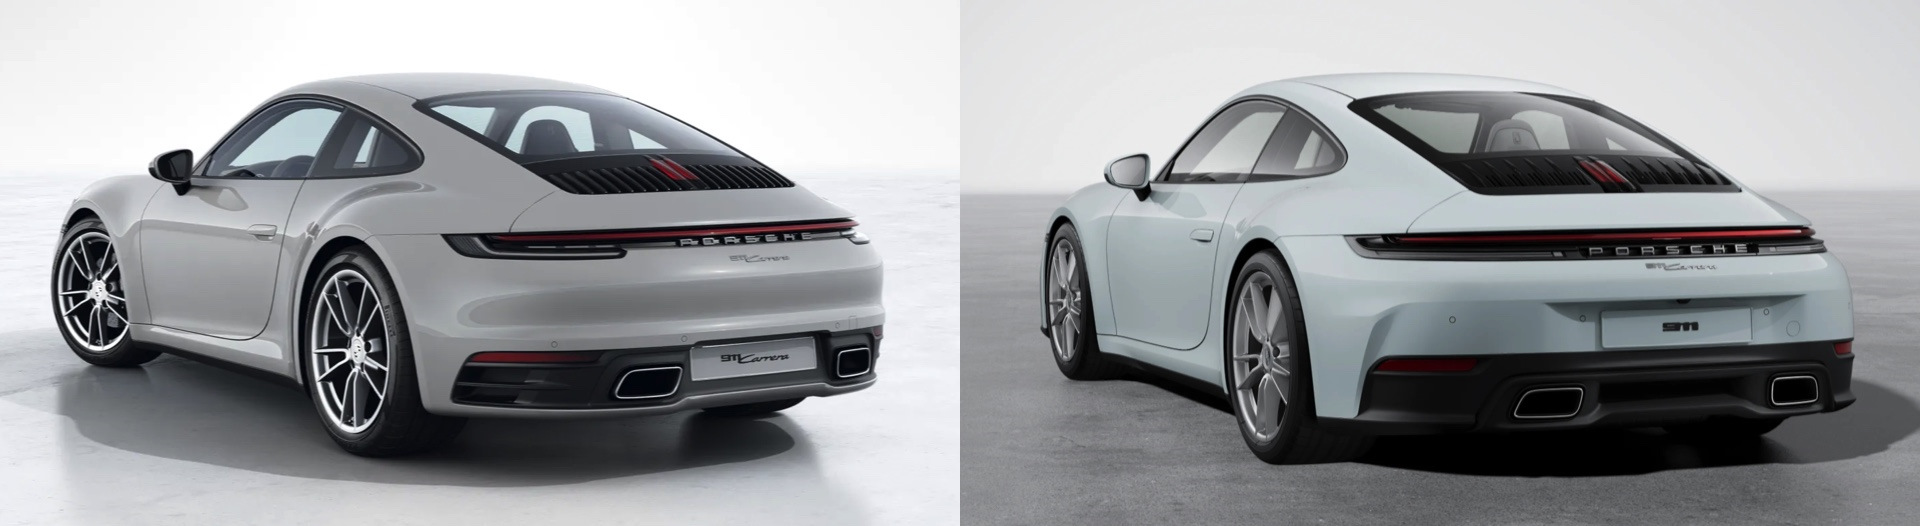 Фото Porsche 911 992.II: гибридный GTS, обновленная Carrera и будущее линейки